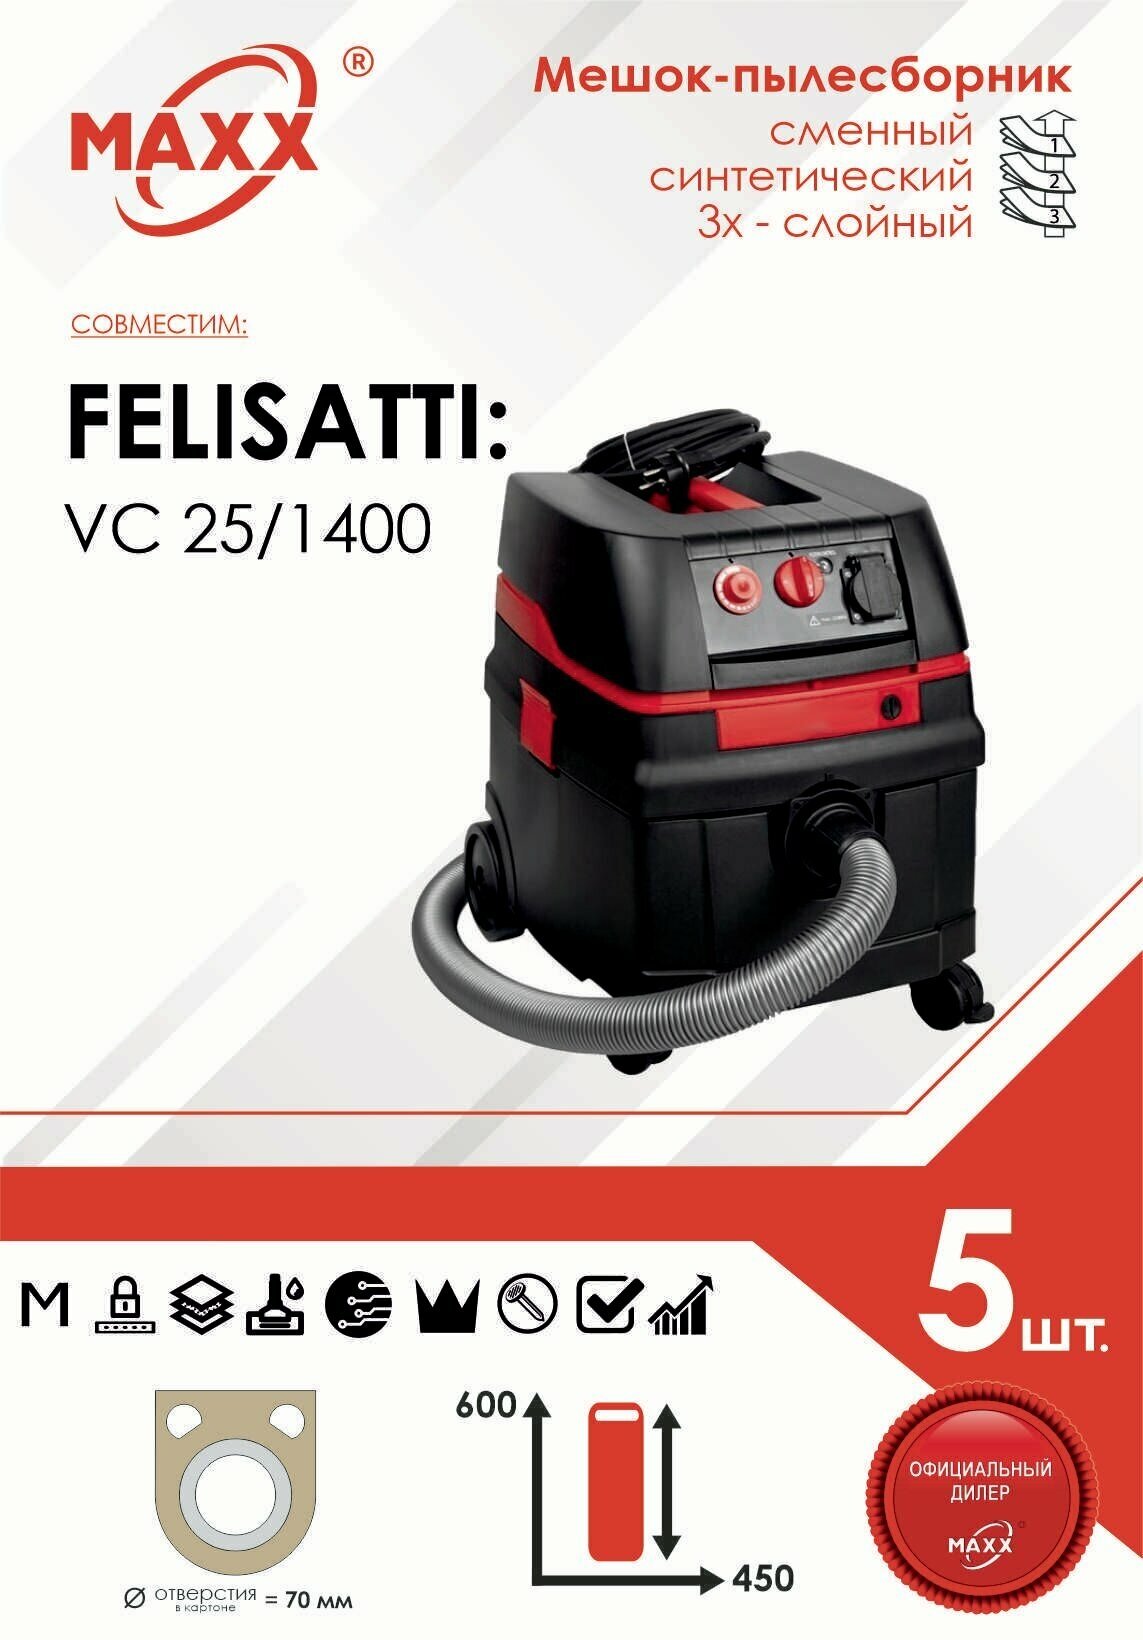 Мешок - пылесборник 5 шт. для пылесоса FELISATTI VC 25/1400, 3210900100 синтетический